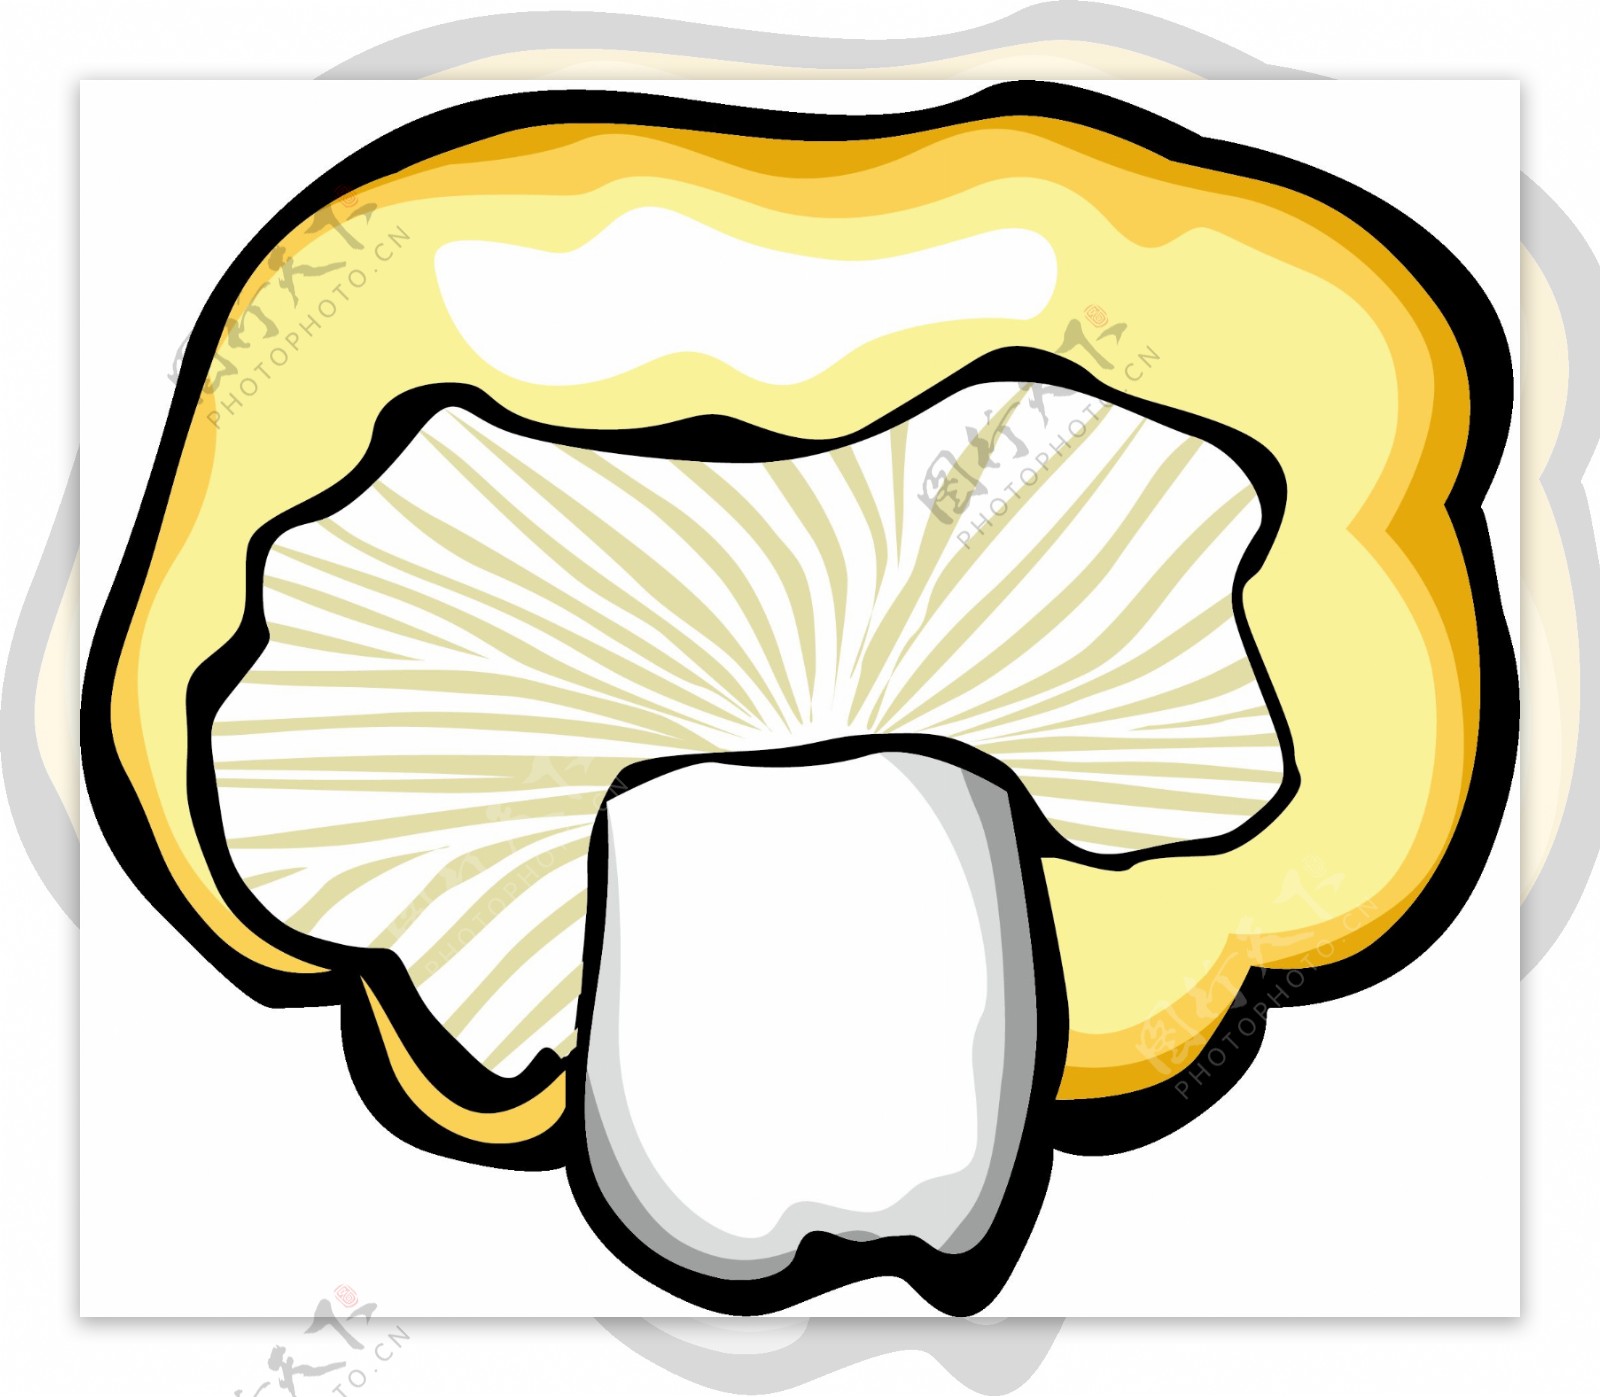 一组卡通蘑菇设计素材